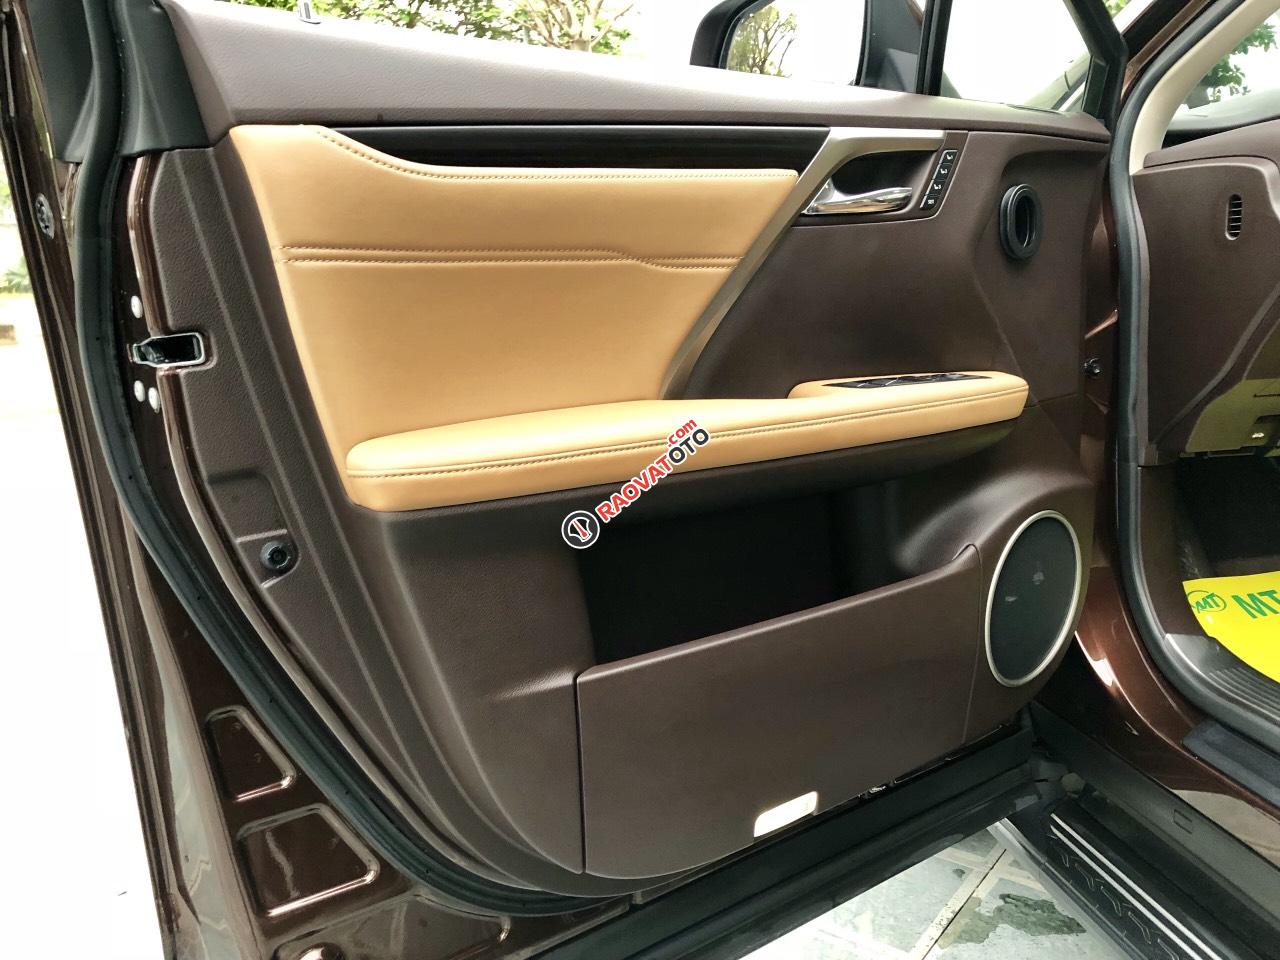 Bán Lexus RX 350 đời 2017 Hà Nội, màu nâu, xe lướt chất -6